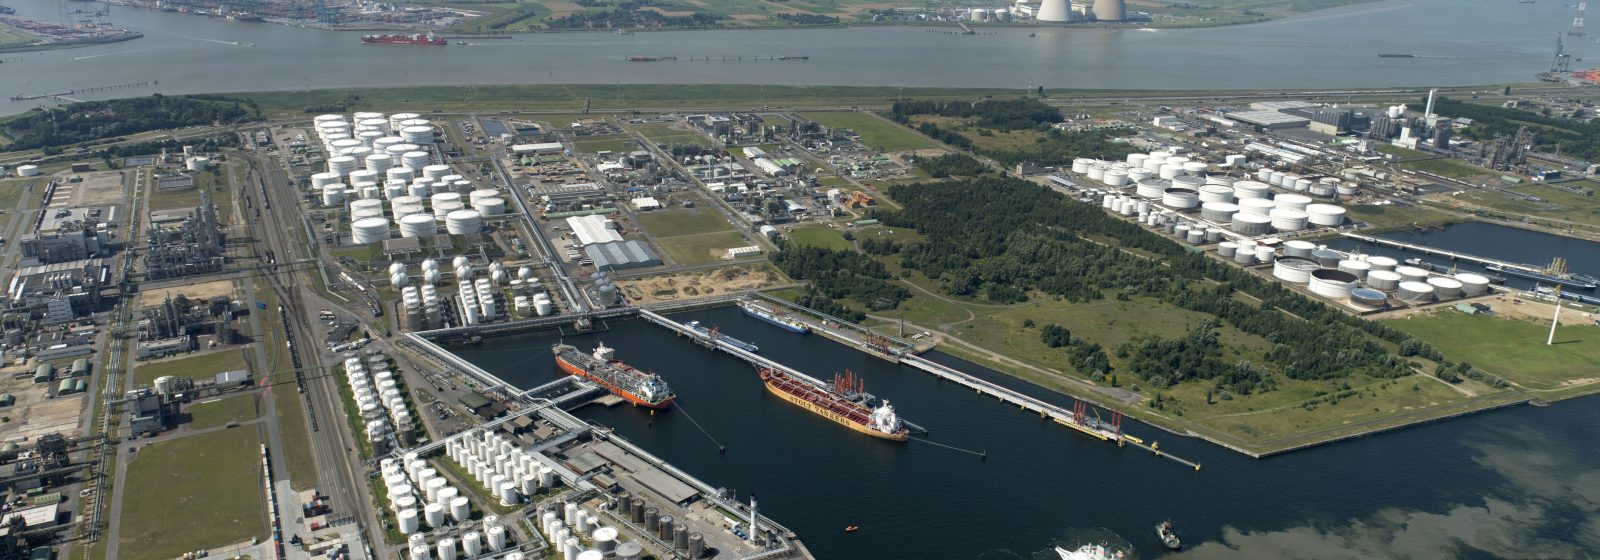 Oiltanking Antwerp Roghtbank aerial view